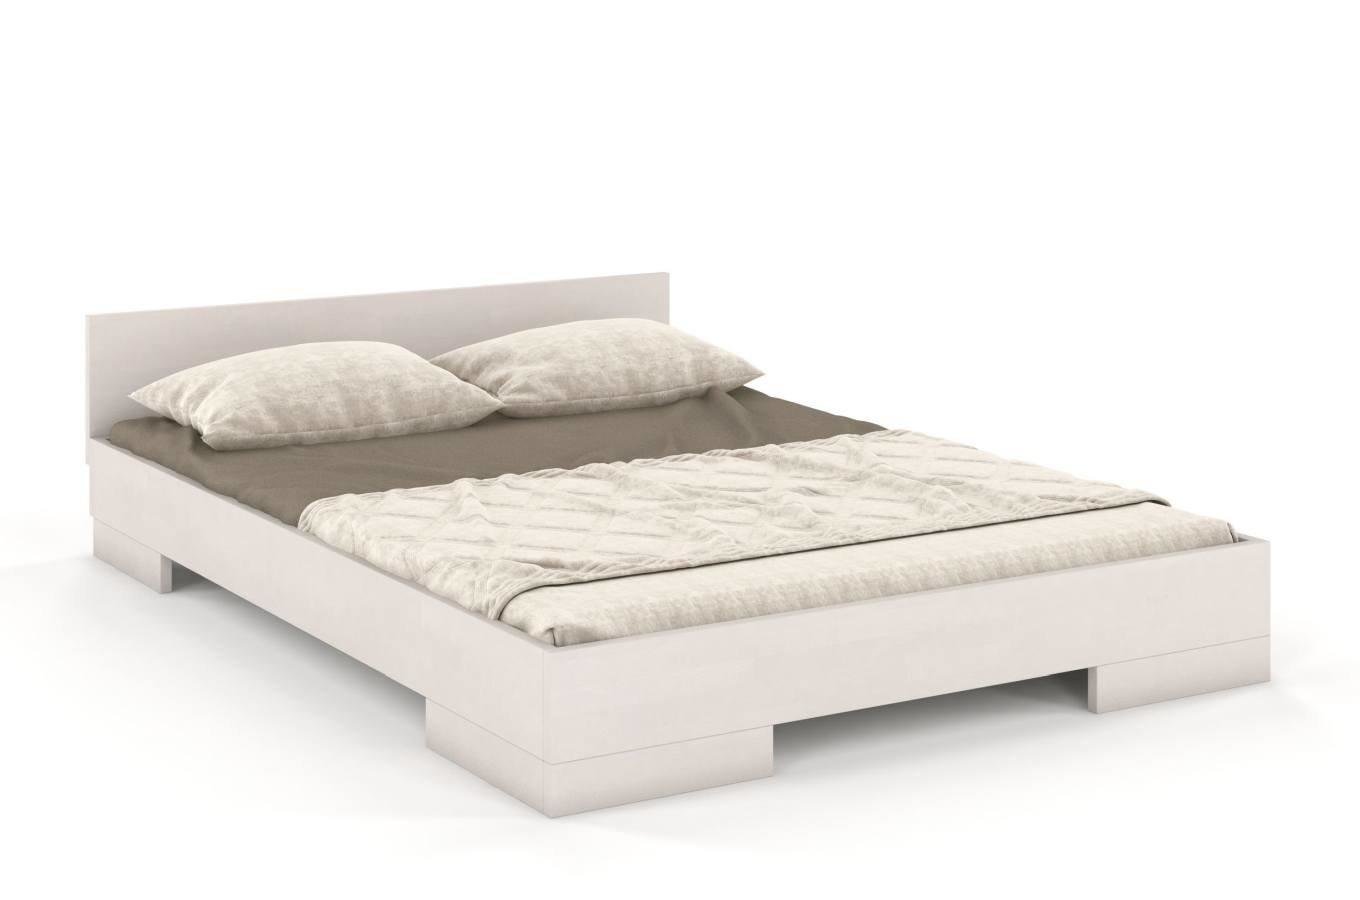 Łóżko drewniane bukowe Skandica SPECTRUM Long (długość + 20 cm) / 180x220 cm, kolor biały